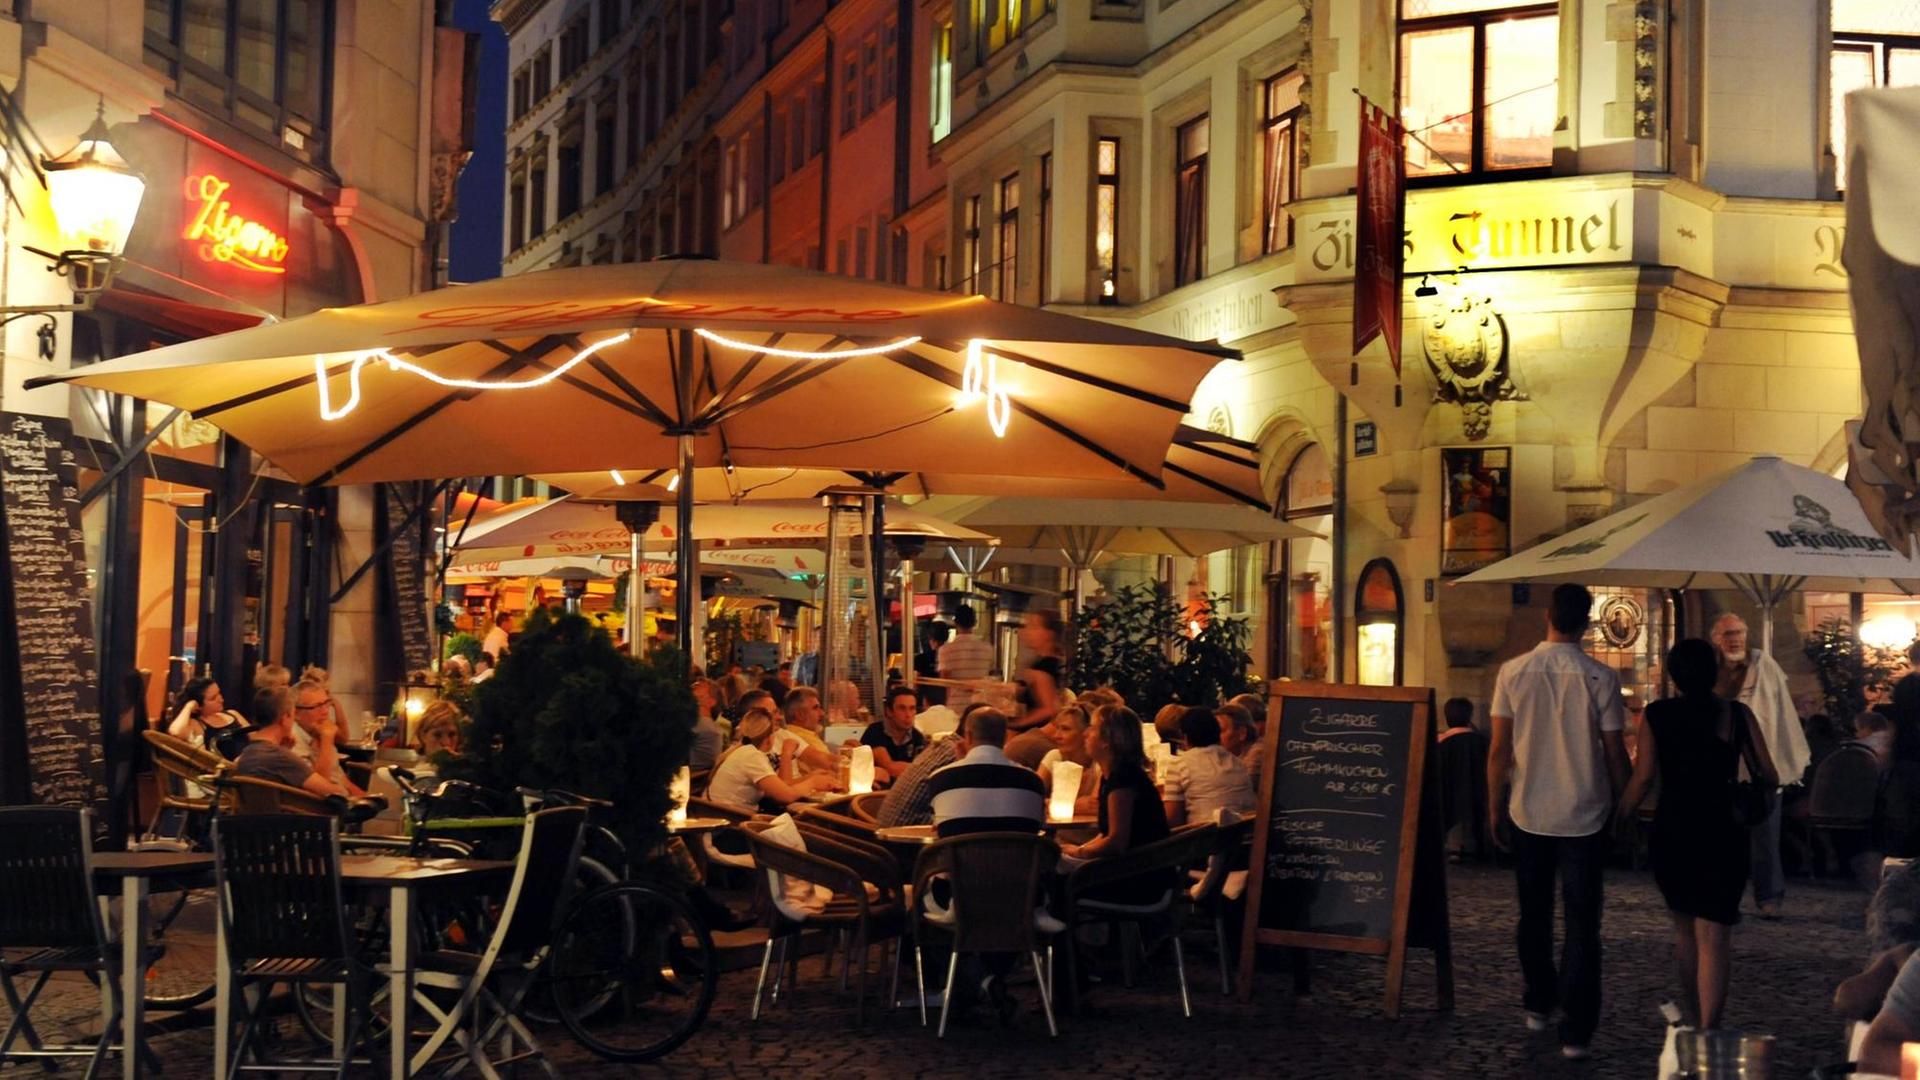 Eine Gaststätte am Abend im Barfußgässchen in der Innenstadt von Leipzig